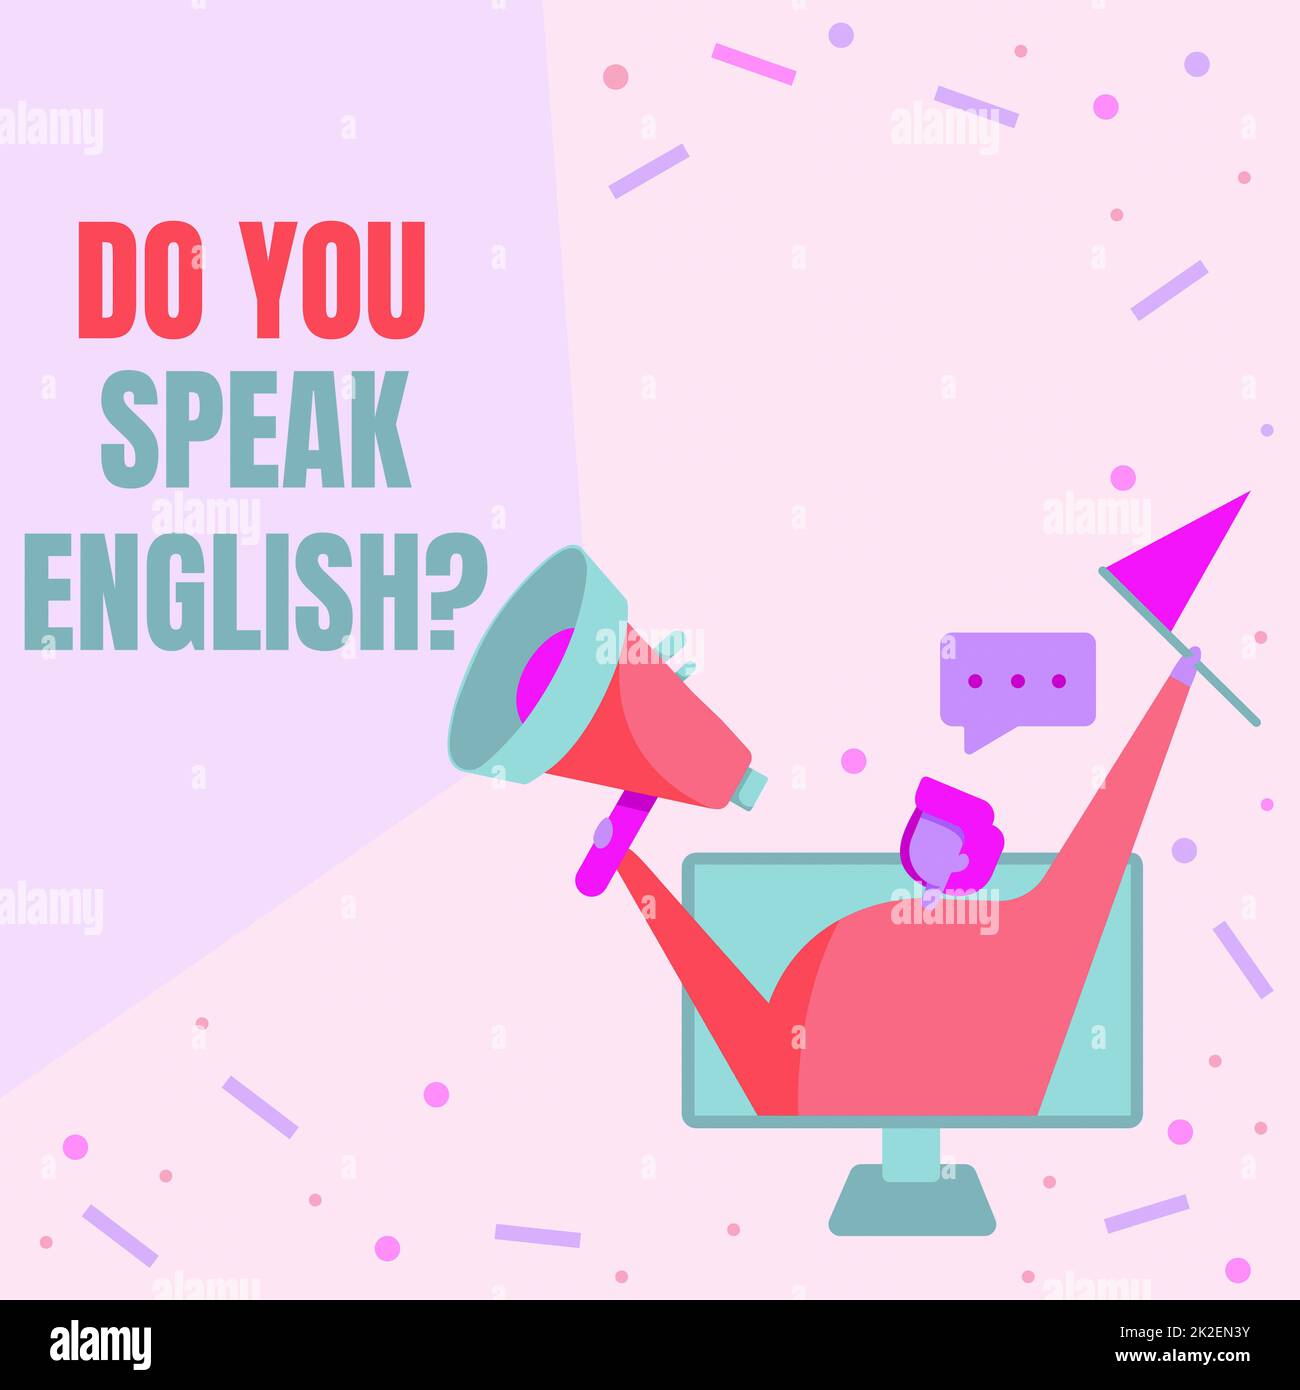 Begrifflicher Titel: Sprechen Sie Englisch? Frage. Business Showcase, um zu erfahren, ob die Person Englisch Lady auf Einem Bildschirm sprechen kann Zeichnung mit Megafon und Flagge. Stockfoto